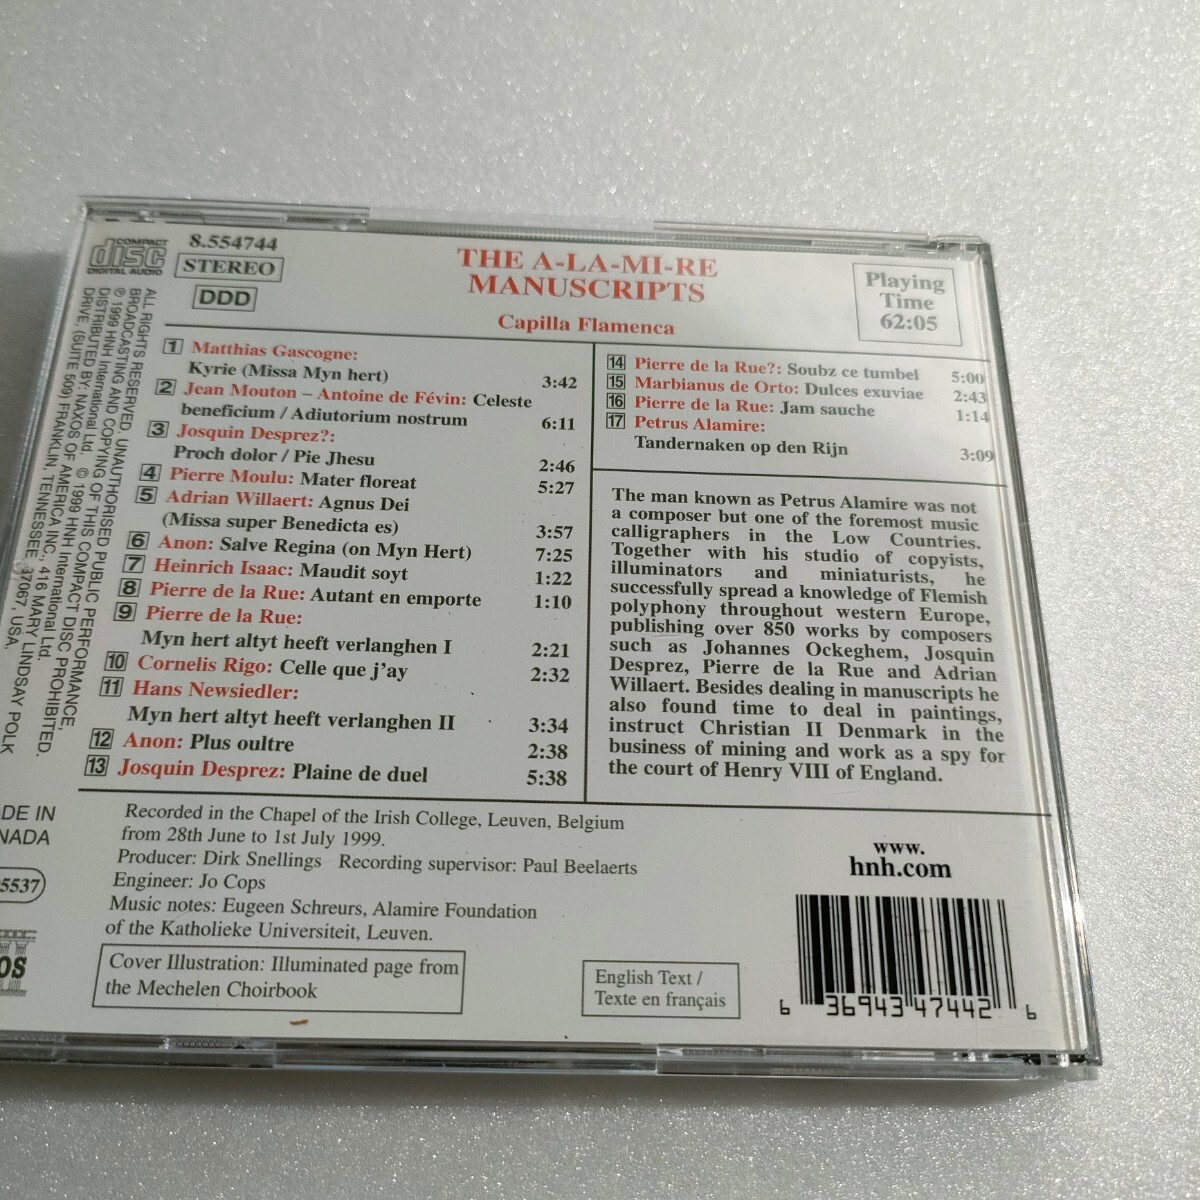 CD フラメンカ「ア・ラ・ミ・レの楽譜集」~シャルル5世のためのフランドルの多声音楽 輸入盤　即決　送料込み